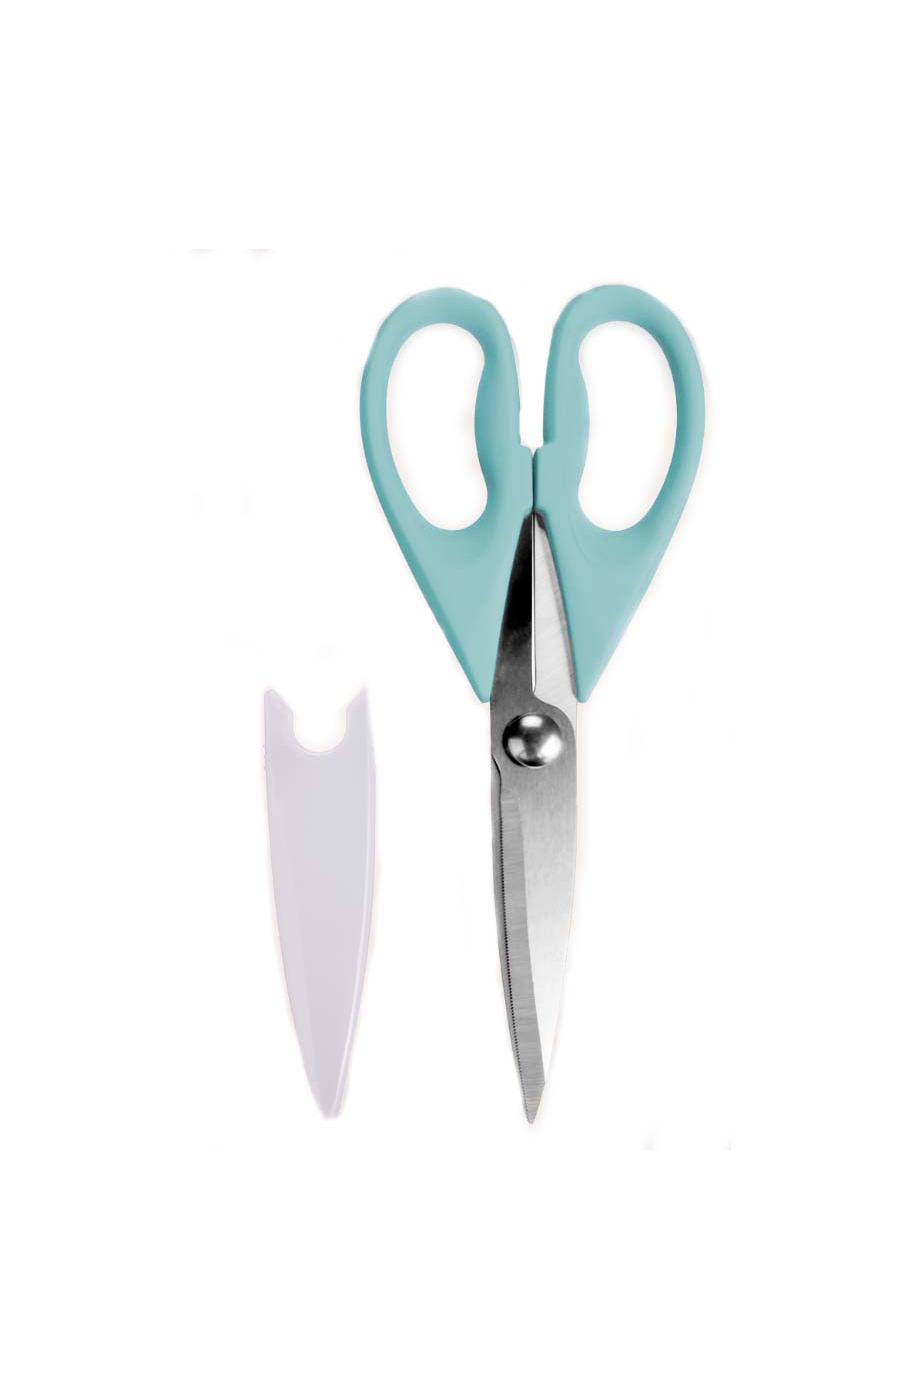 Destination Holiday Scissors With Cover - Aqua; image 2 of 2